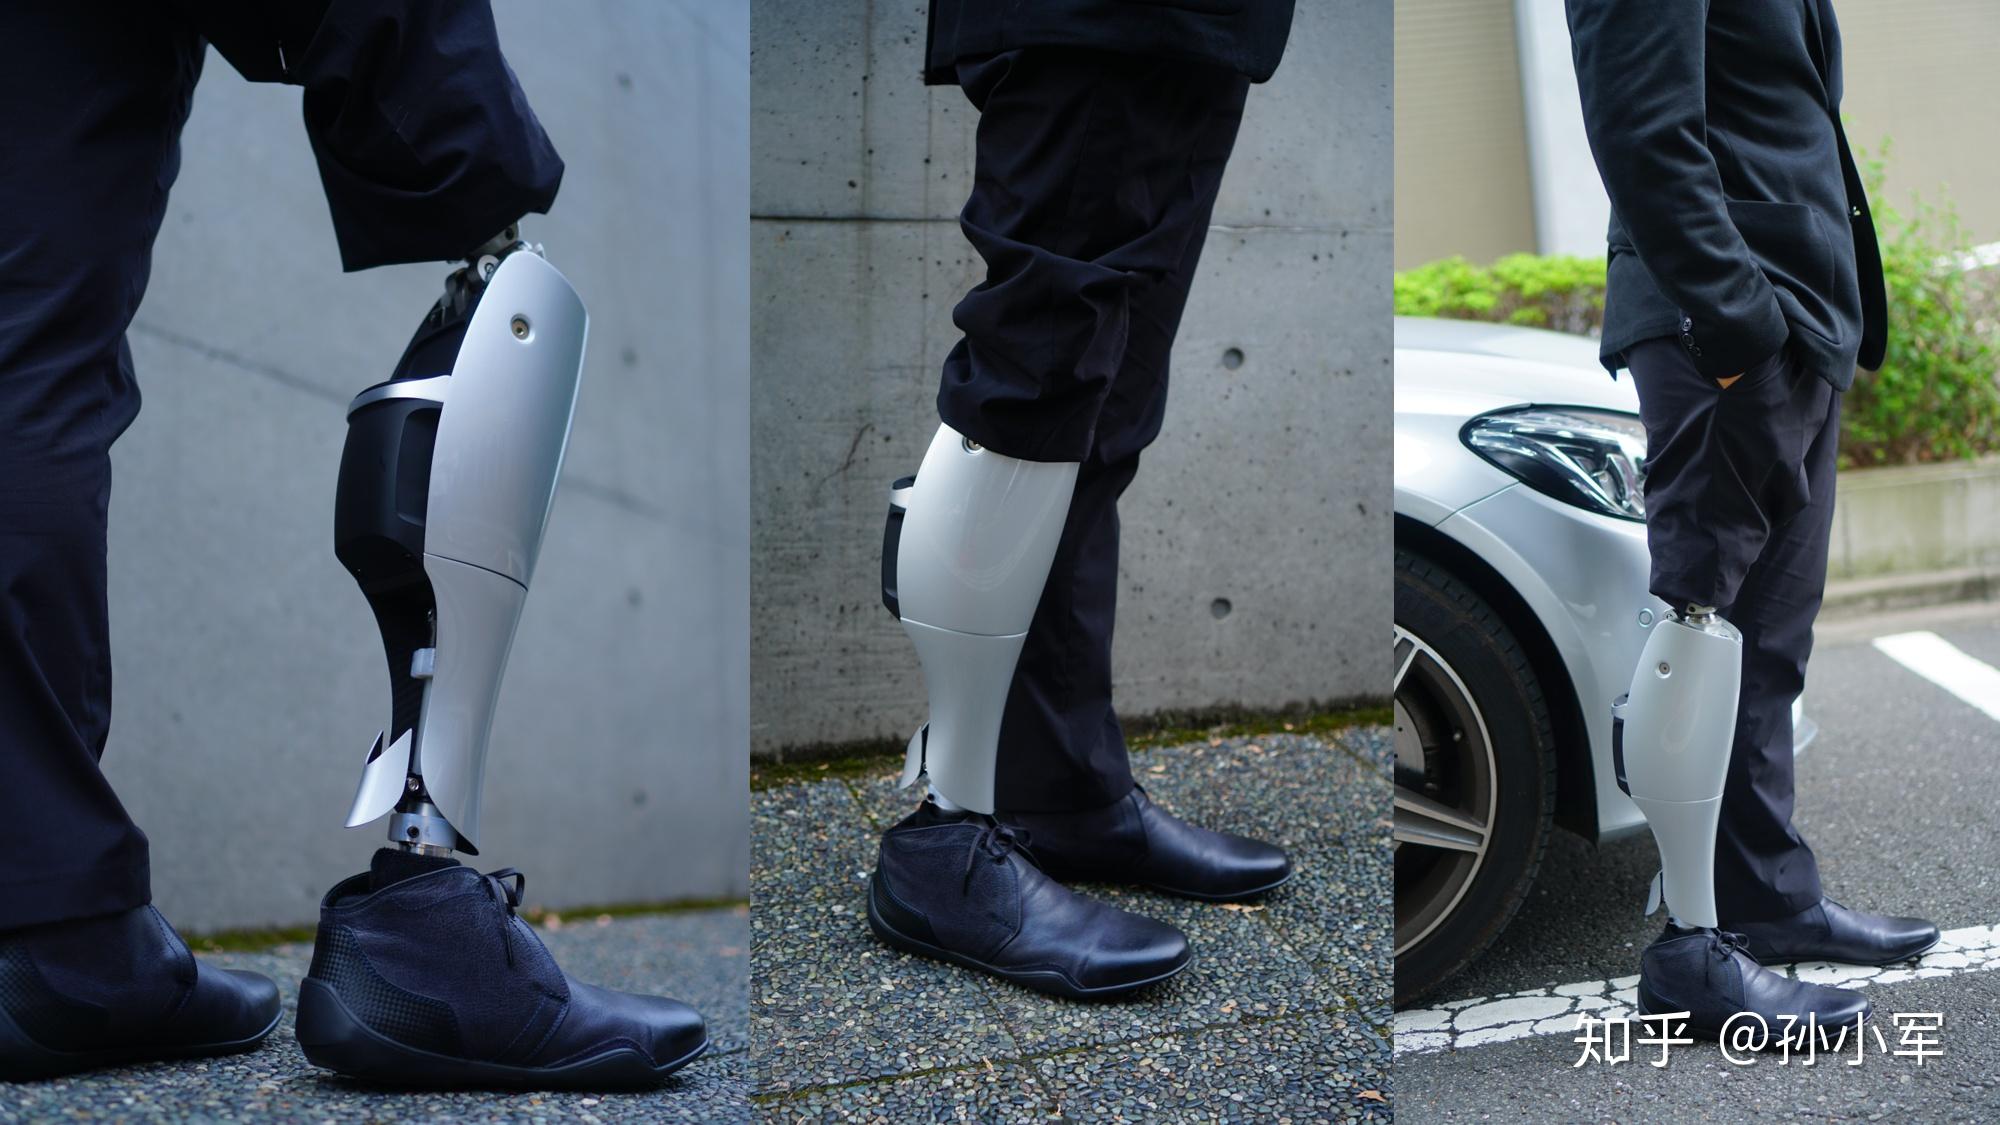 【2020 红点之星奖】Robotic Prosthetic Knee / 假肢 - 普象网